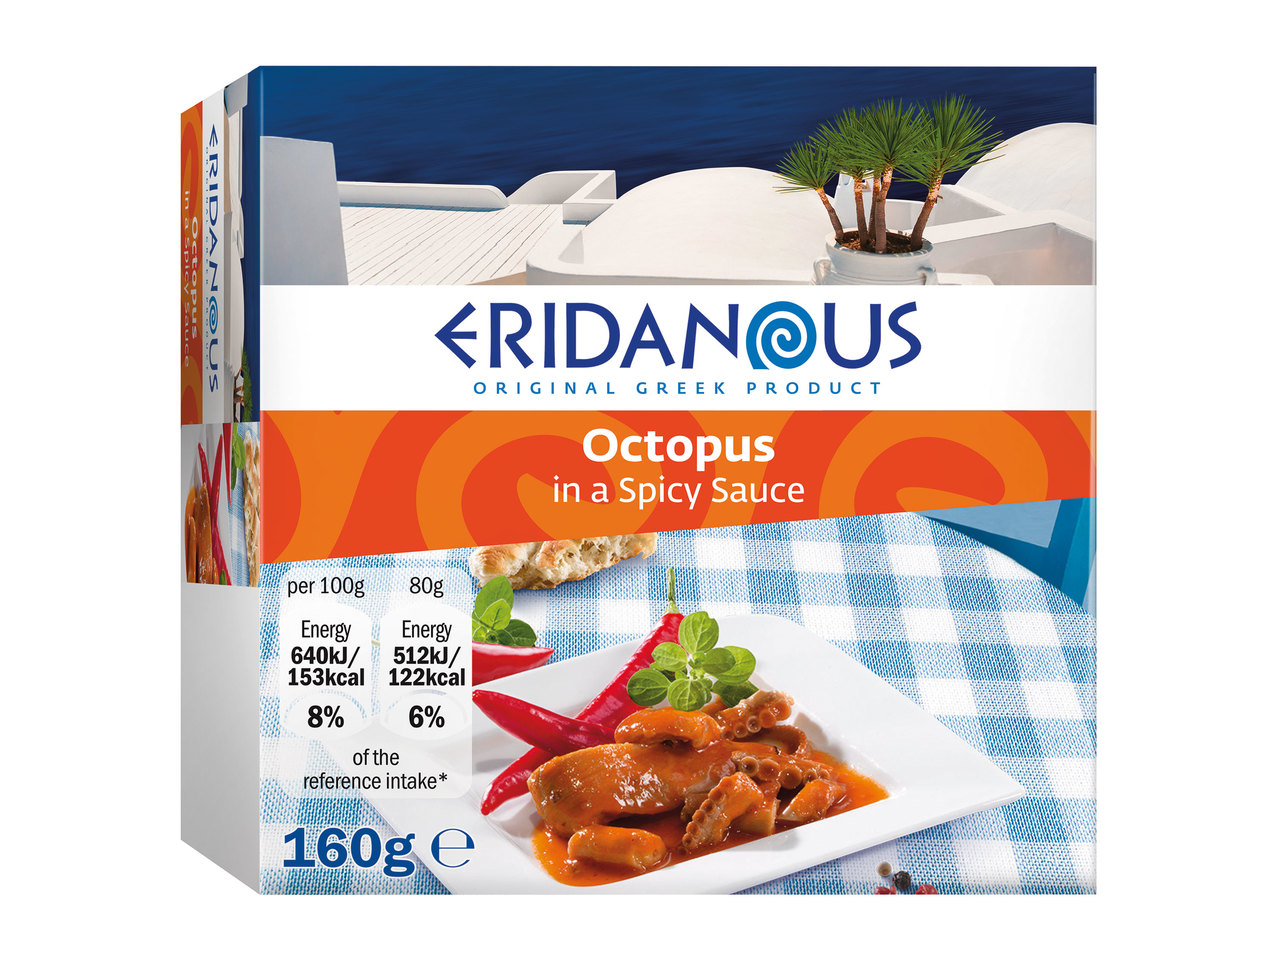 Eridanous Octopus1